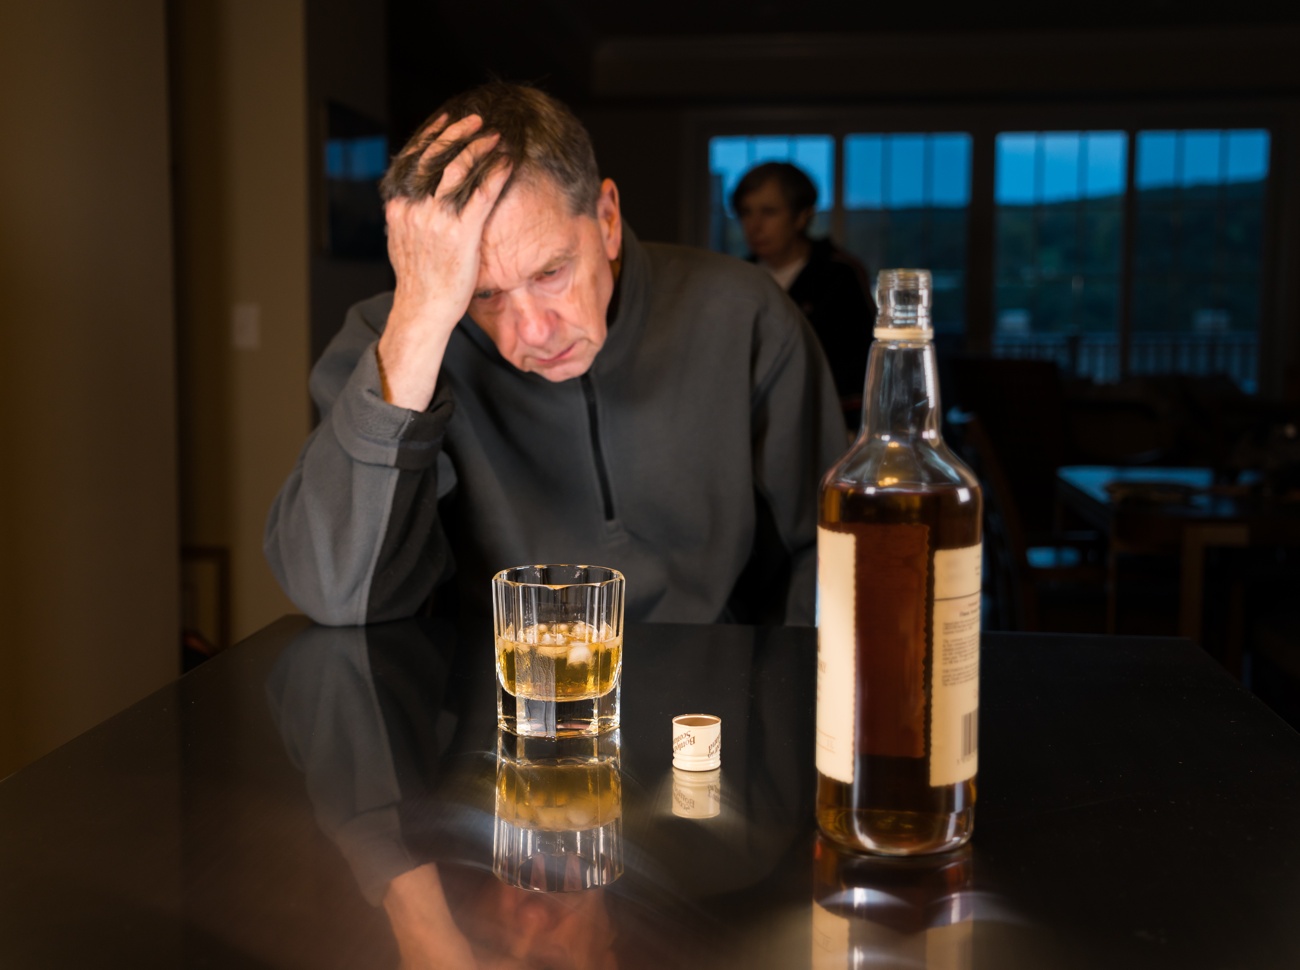 Beber en exceso es perjudicial para tu salud